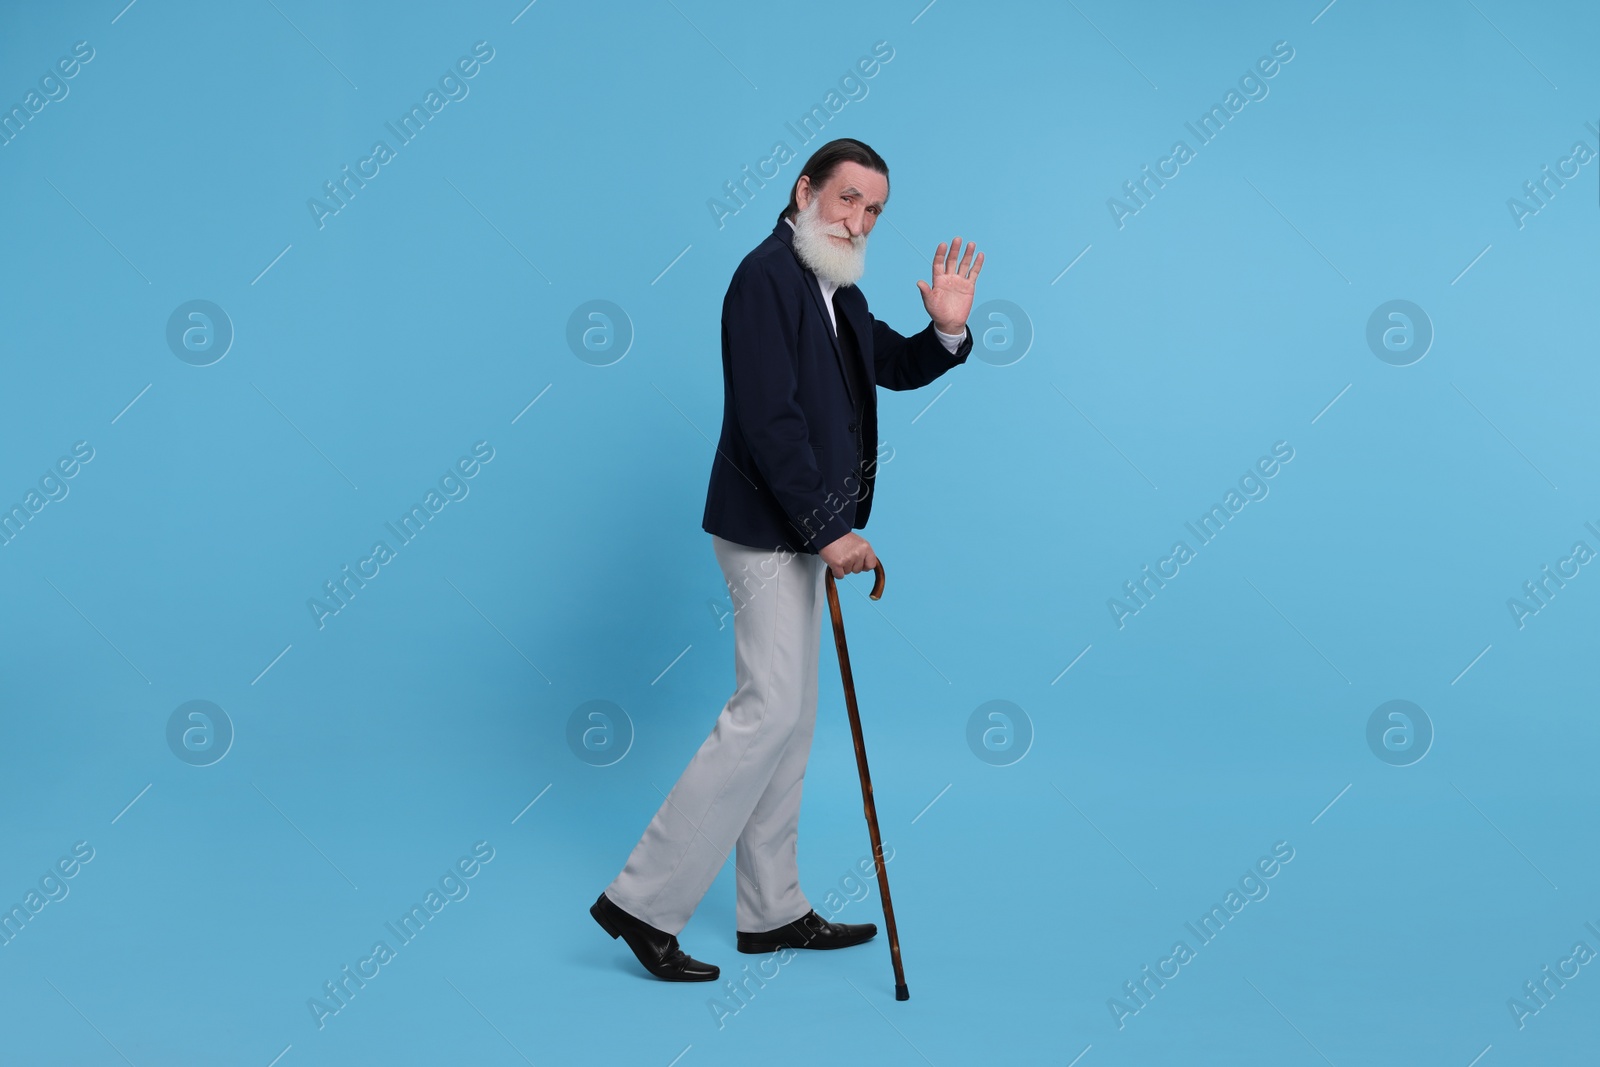 Photo of Senior man with walking cane waving on light blue background